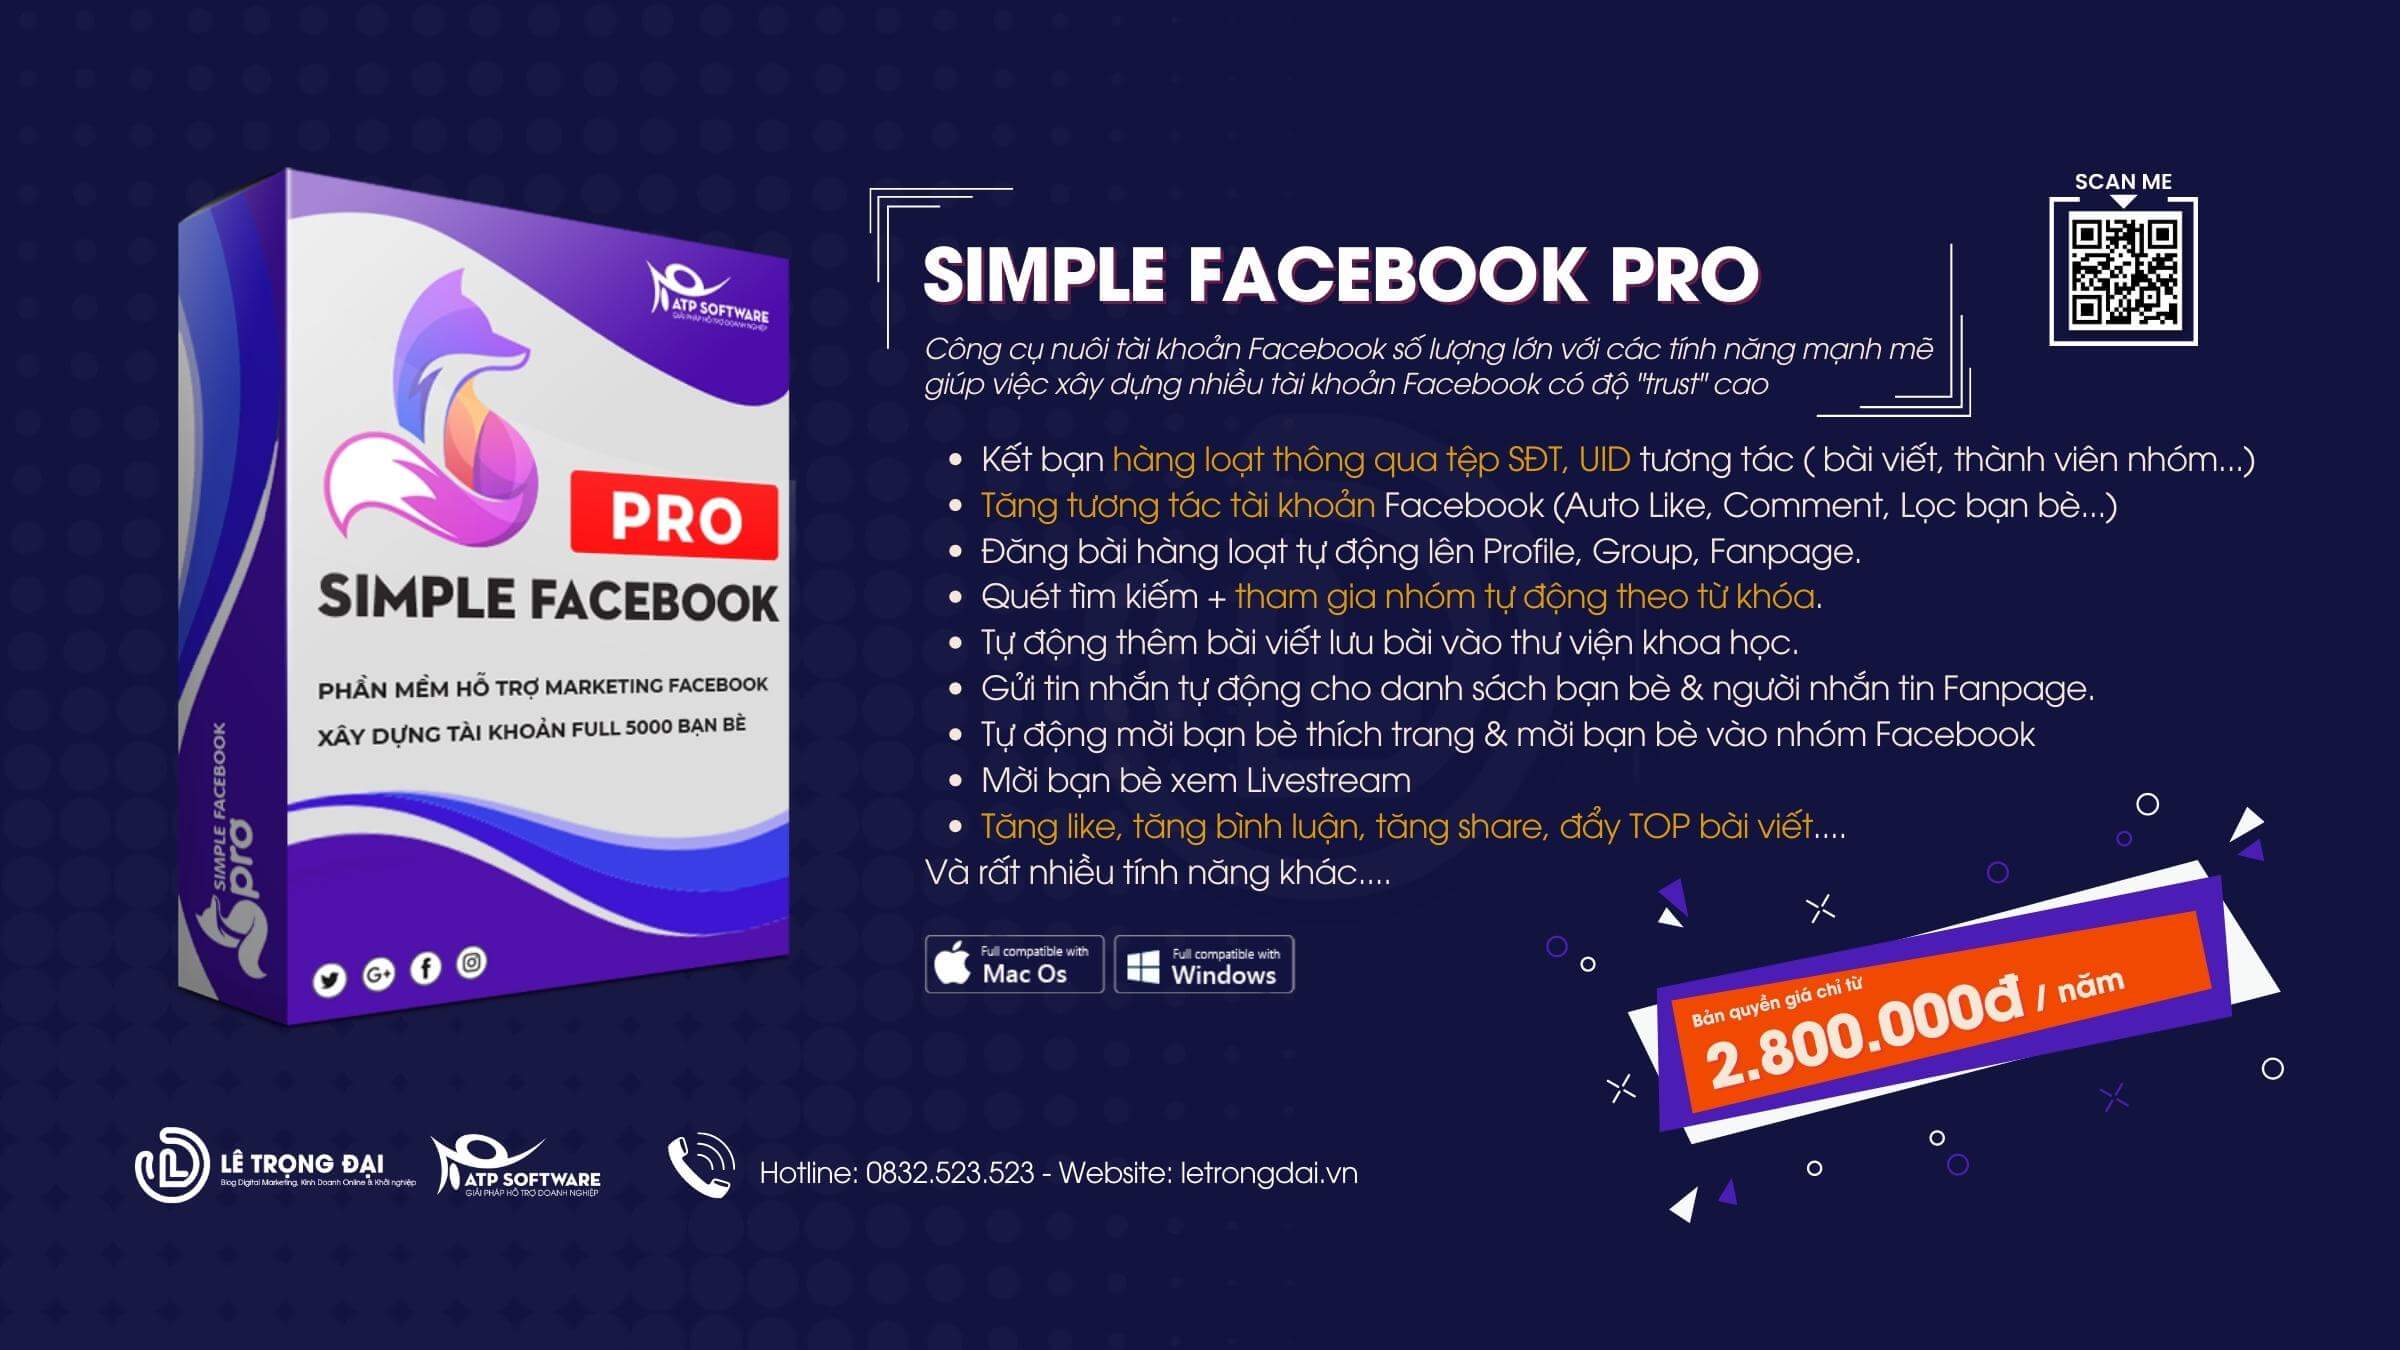 Phần mềm Simple Facebook Pro tìm kiếm khách hàng tiềm năng Facebook 5